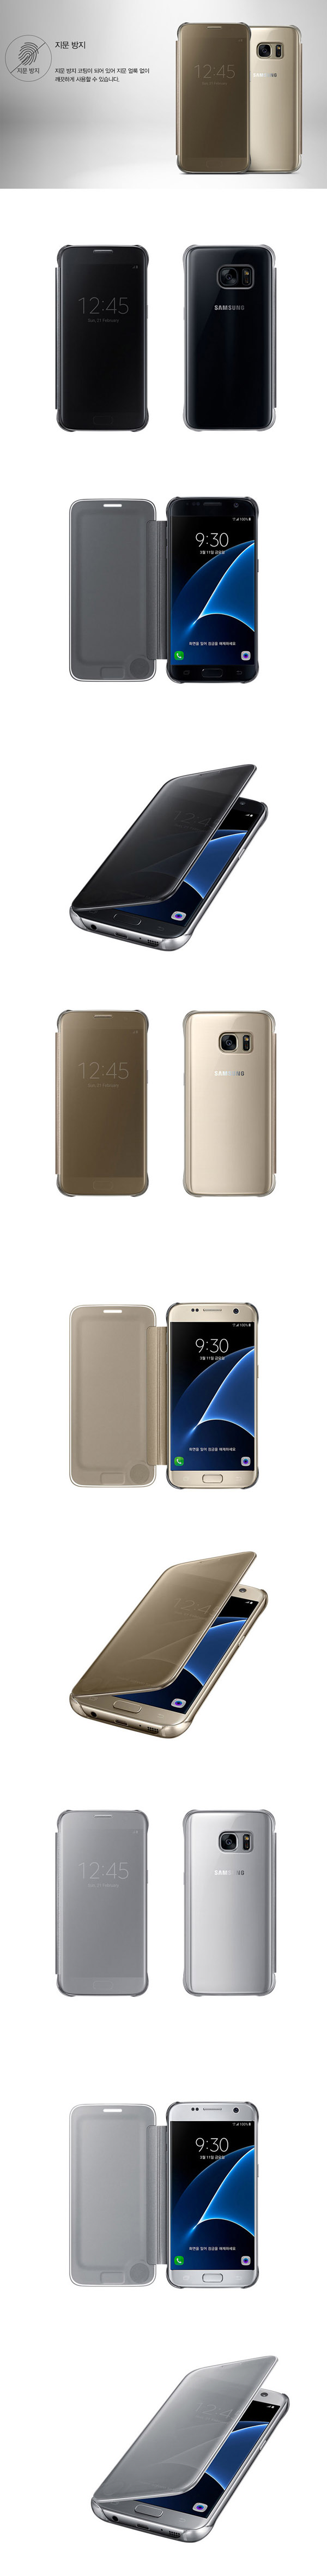 Thay pin điện thoại Samsung S7 EDGE giá tốt tại Hà Nội | BKsmart